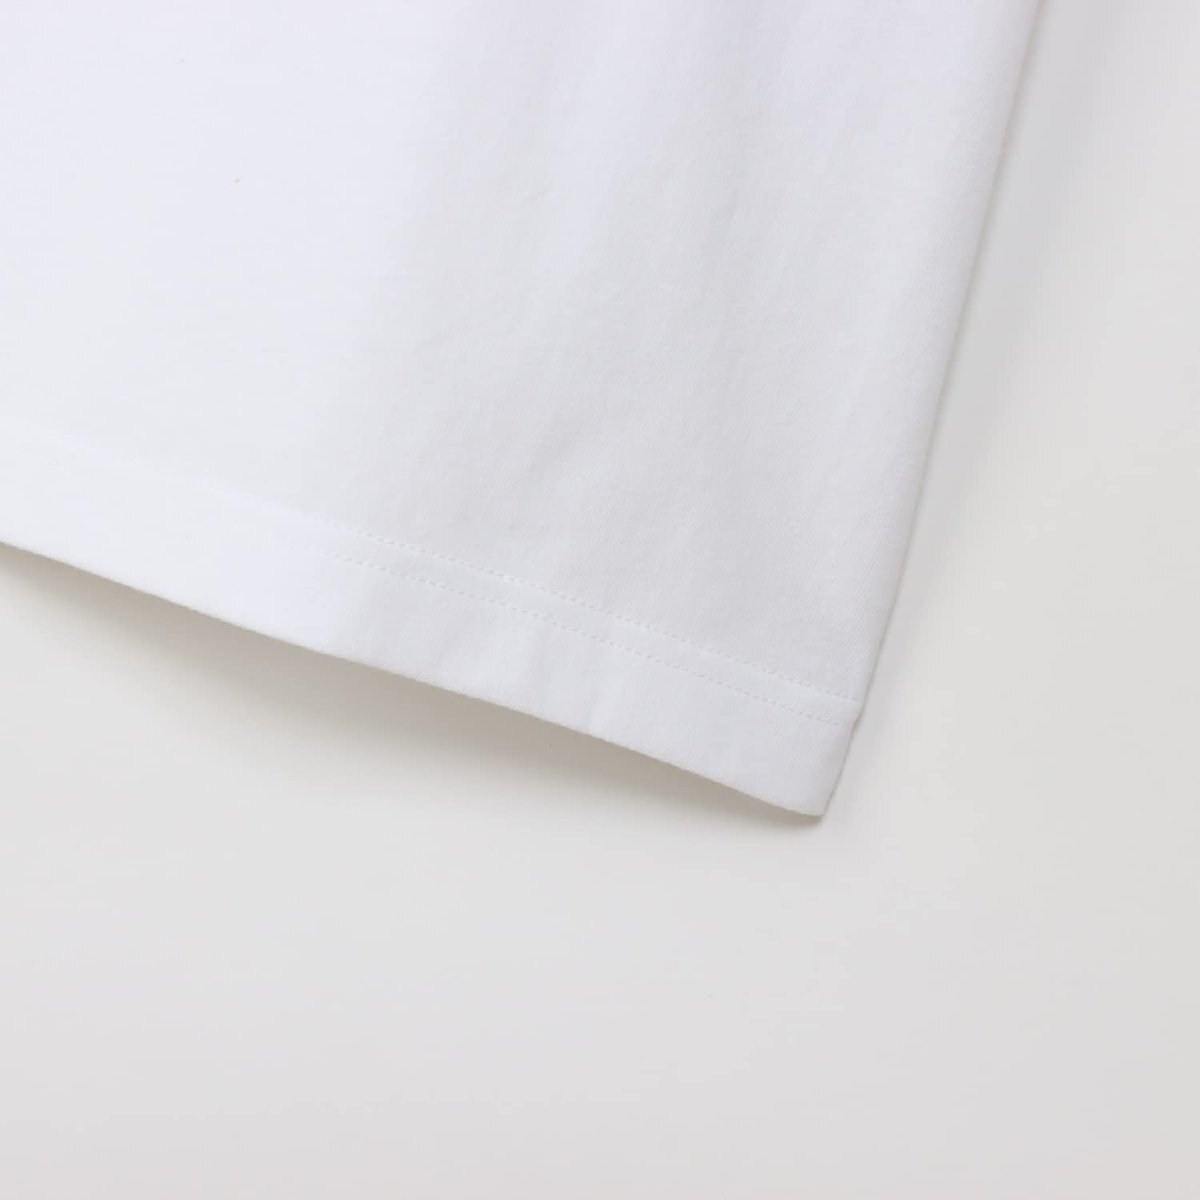 [ヘインズ] Tシャツ 半袖 丸首 綿100% 丸胴仕様 タグレス仕様 モックネックTシャツ アンダーウェアメンズ HM1-X203 ホワイト M_画像2